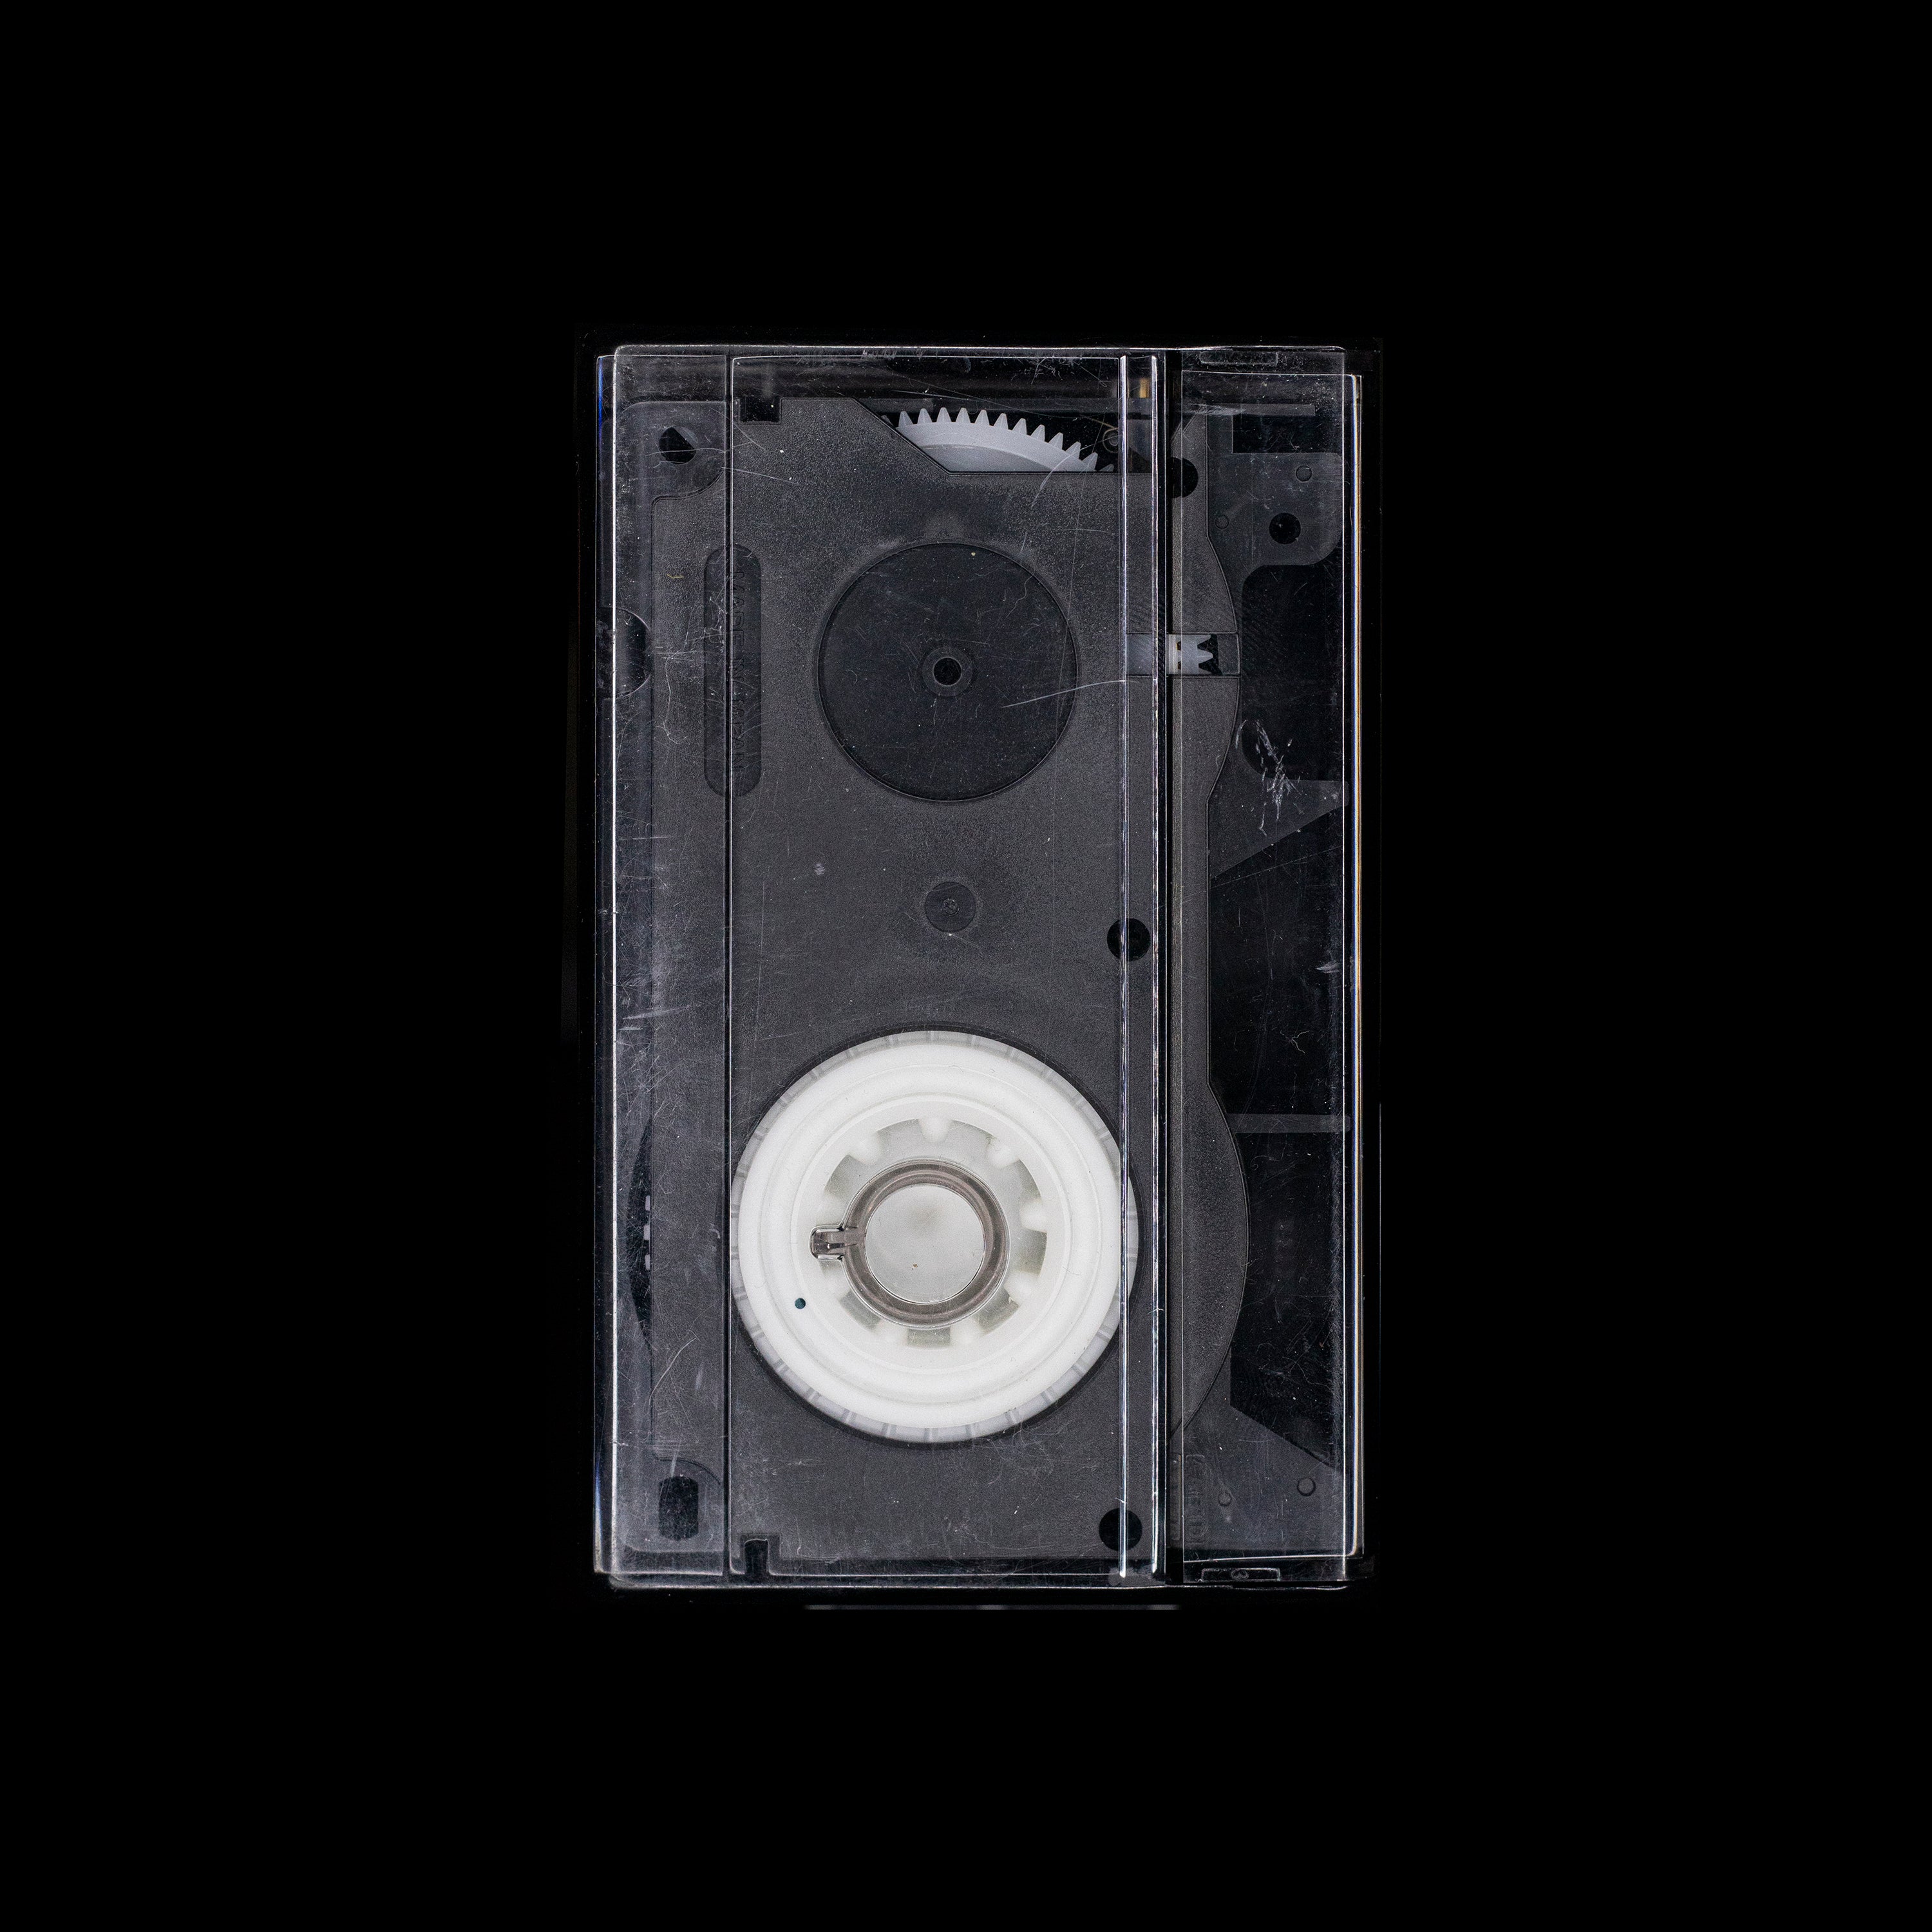 VHS-C Video Cassette